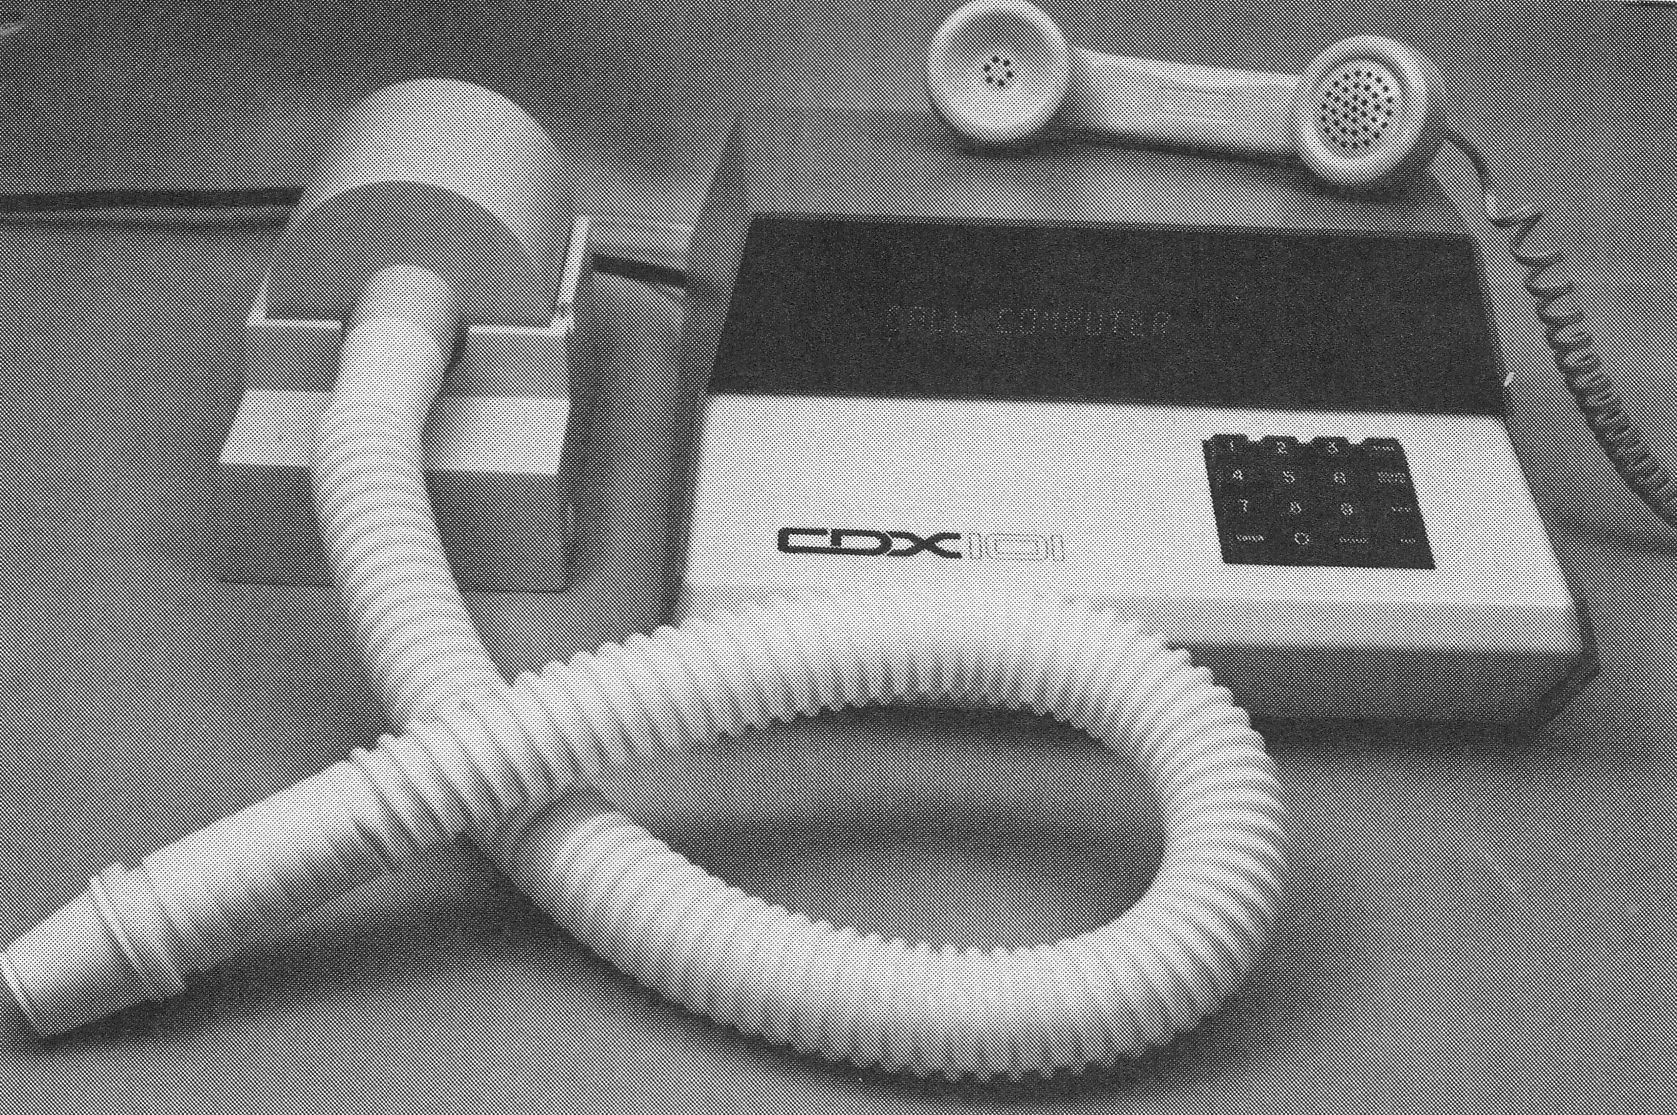 Spirometer_CDX101_3M-MAYO2001PF_1987